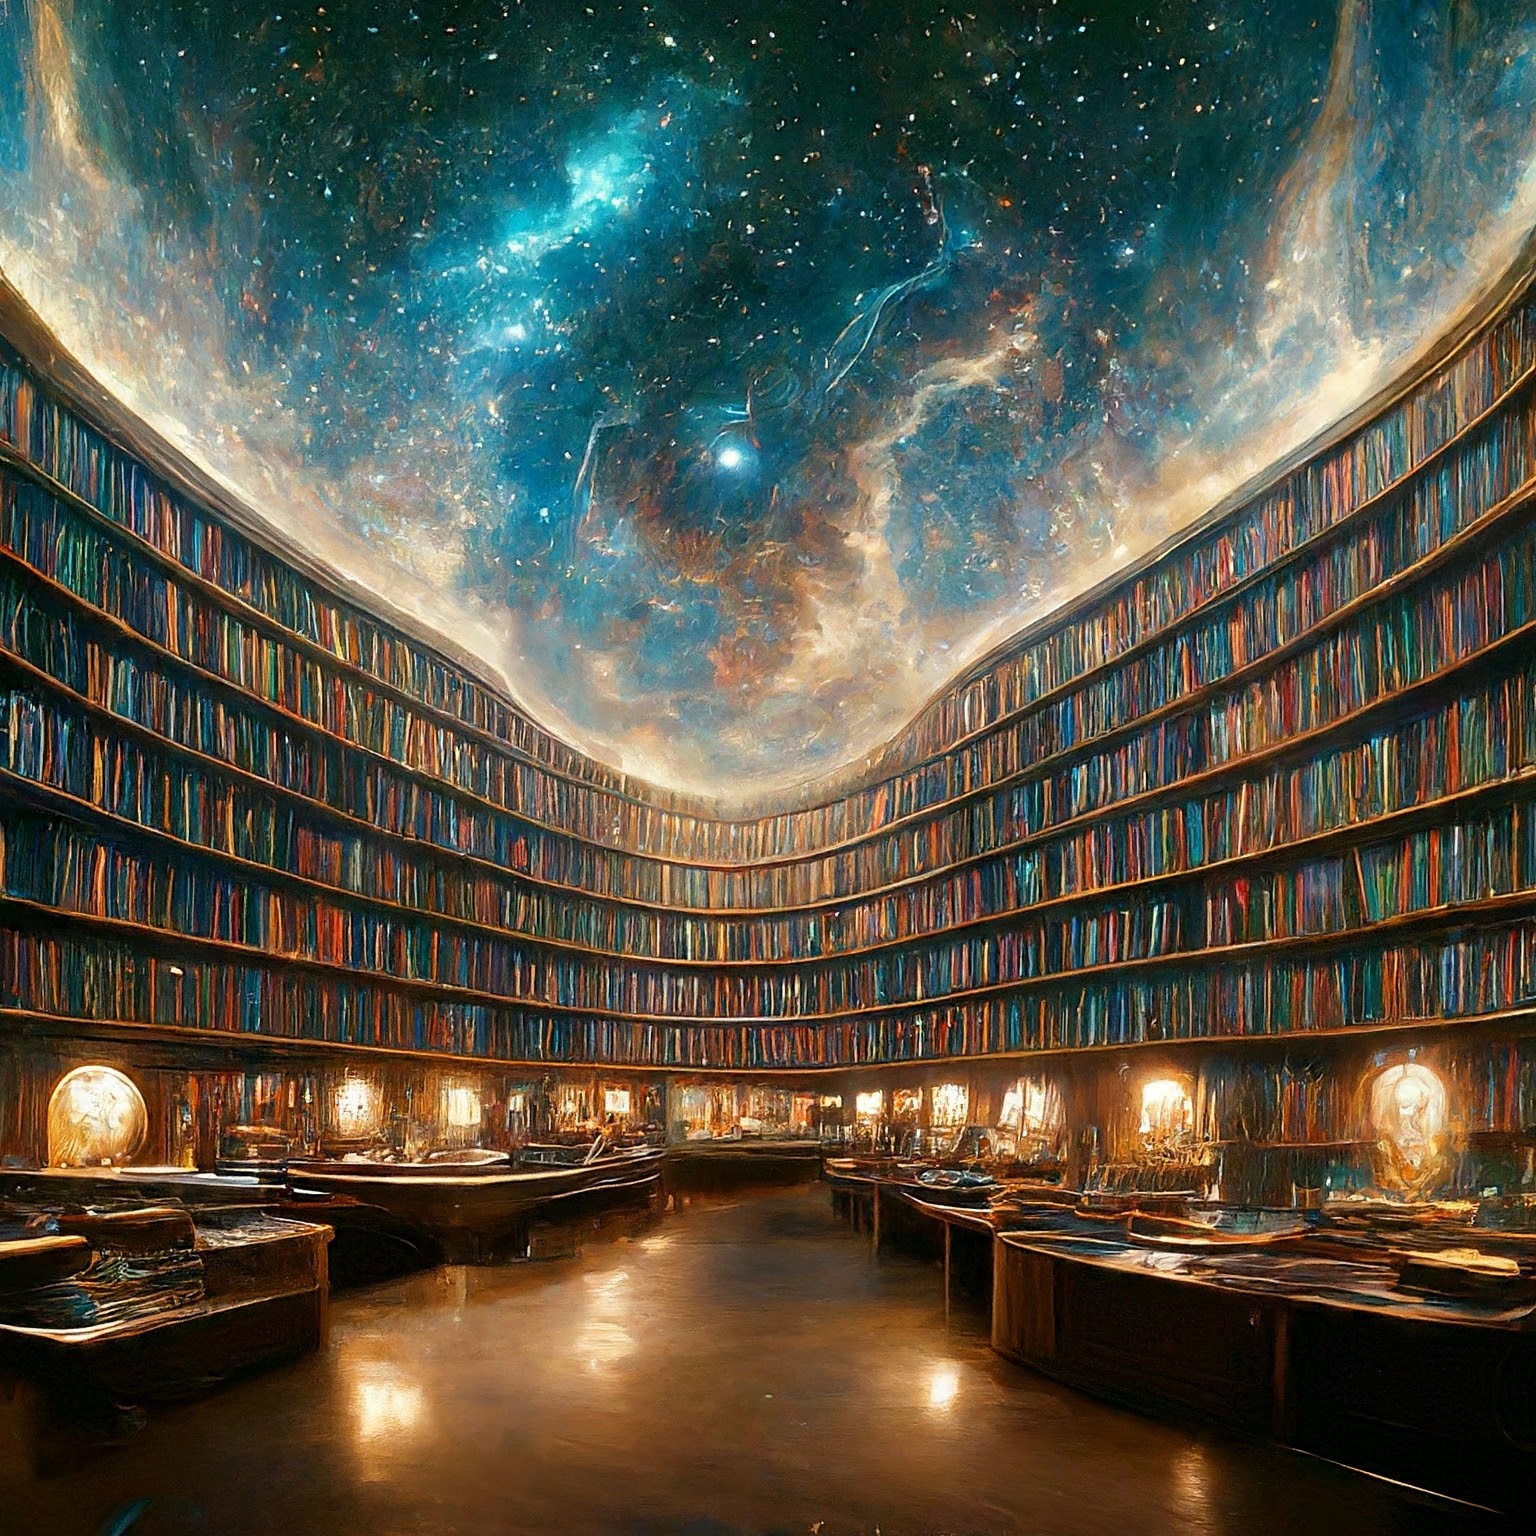 Библиотека, заполненная миллионами редких книг под куполом звездного неба иных галактик